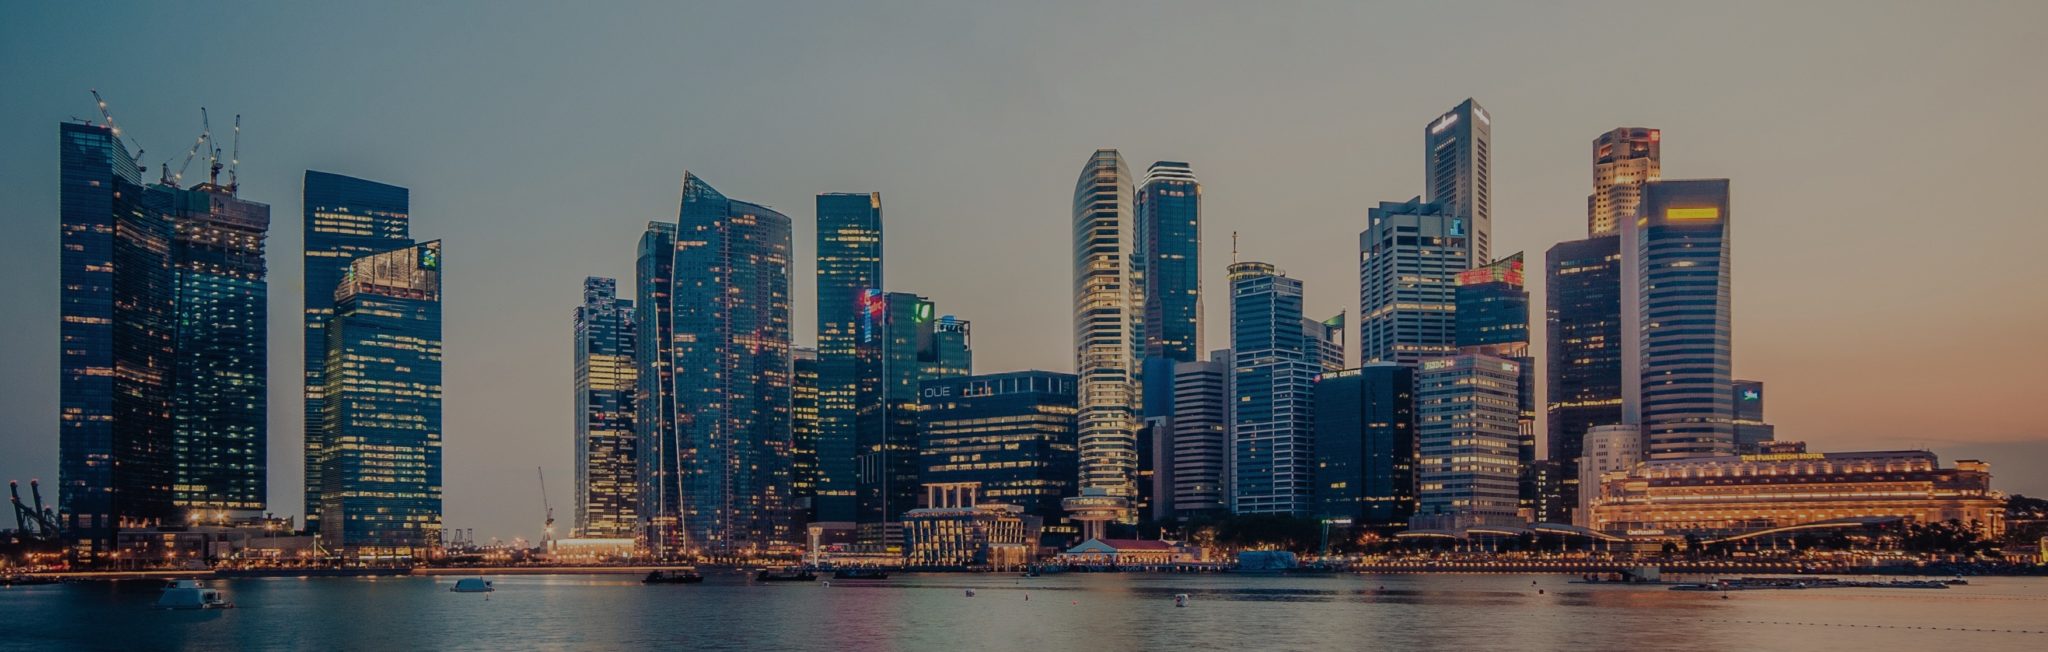 Singapore Fintech Festival 2020